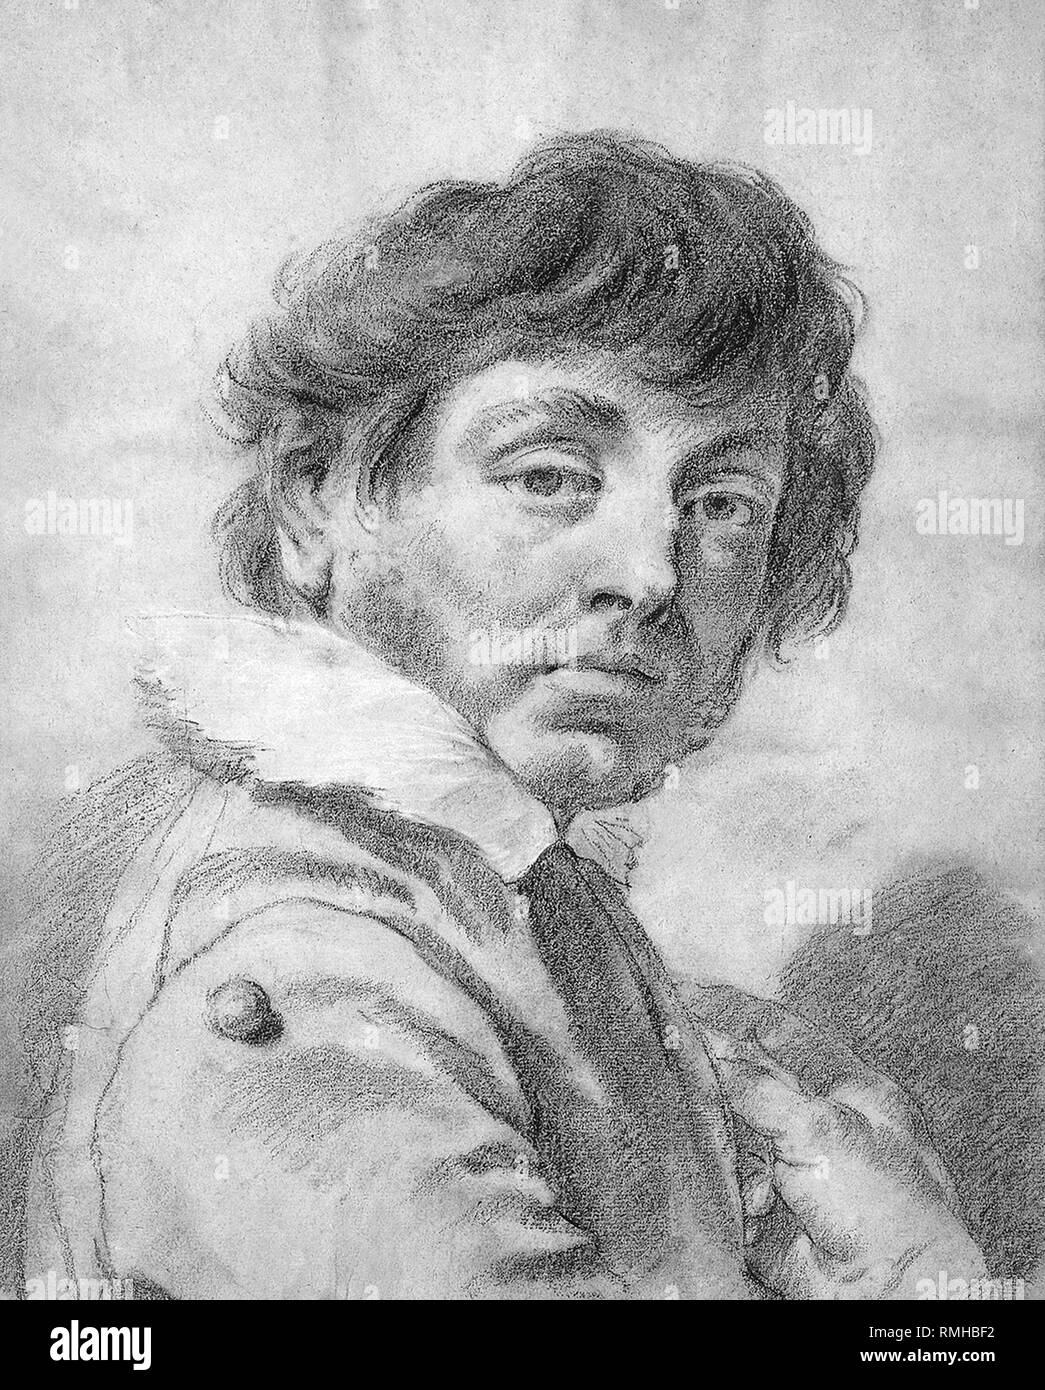 Giovanni Battista Piazzetta (Giambattista Piazzeta o Giambattista Valentino Piazzetta) (1683 - 1754), artista pintor rococó italiano Foto de stock